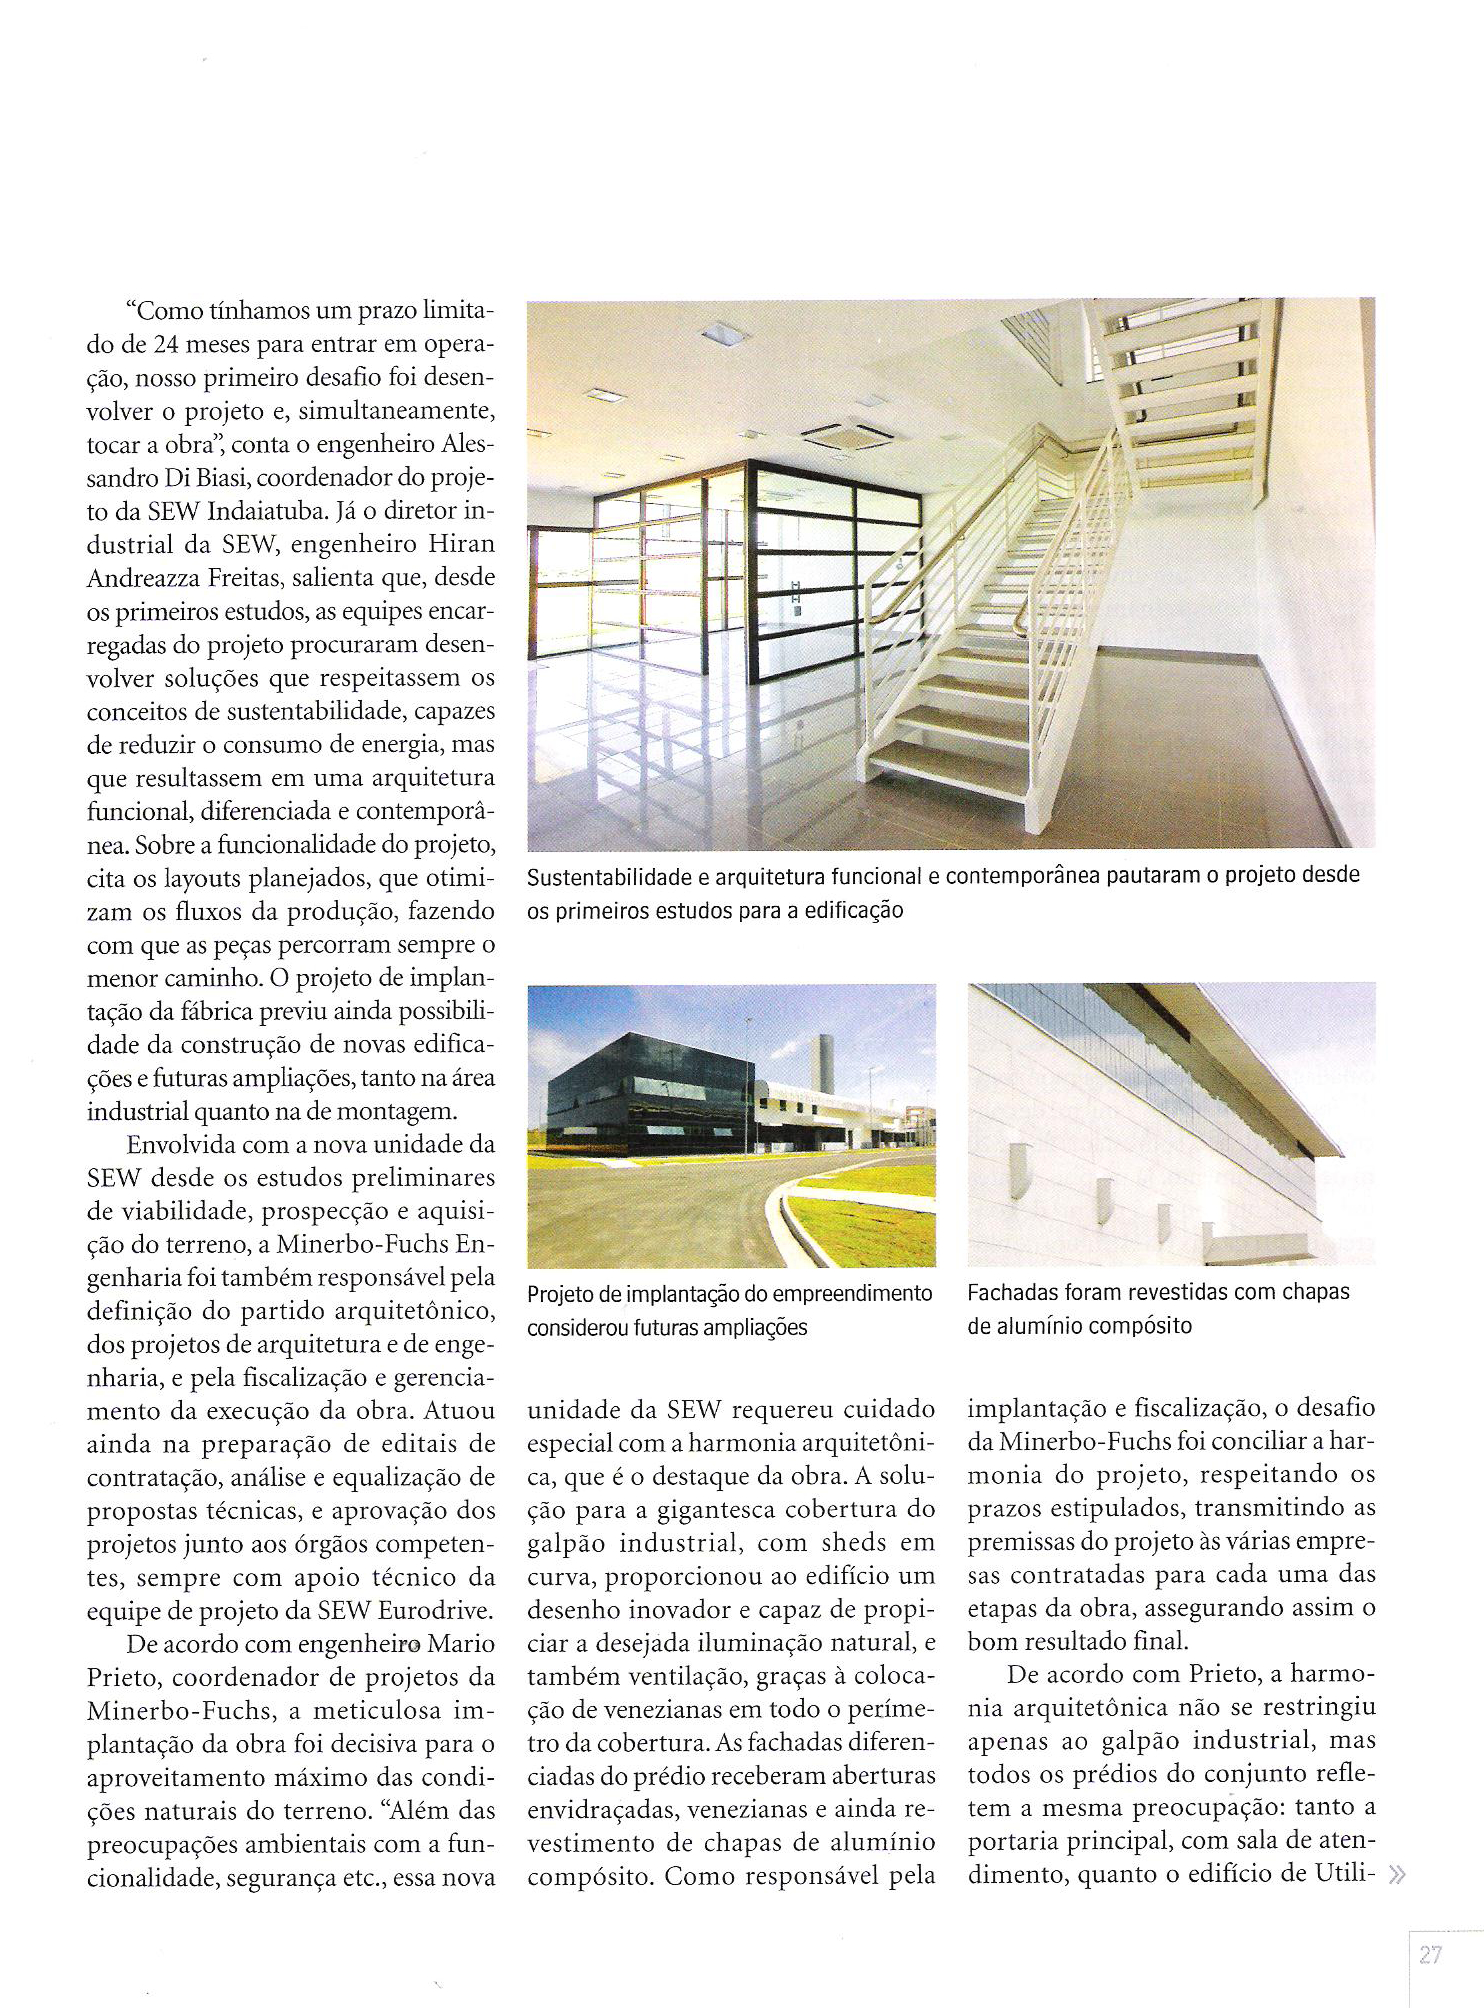 Página 27 - Revista Téchne